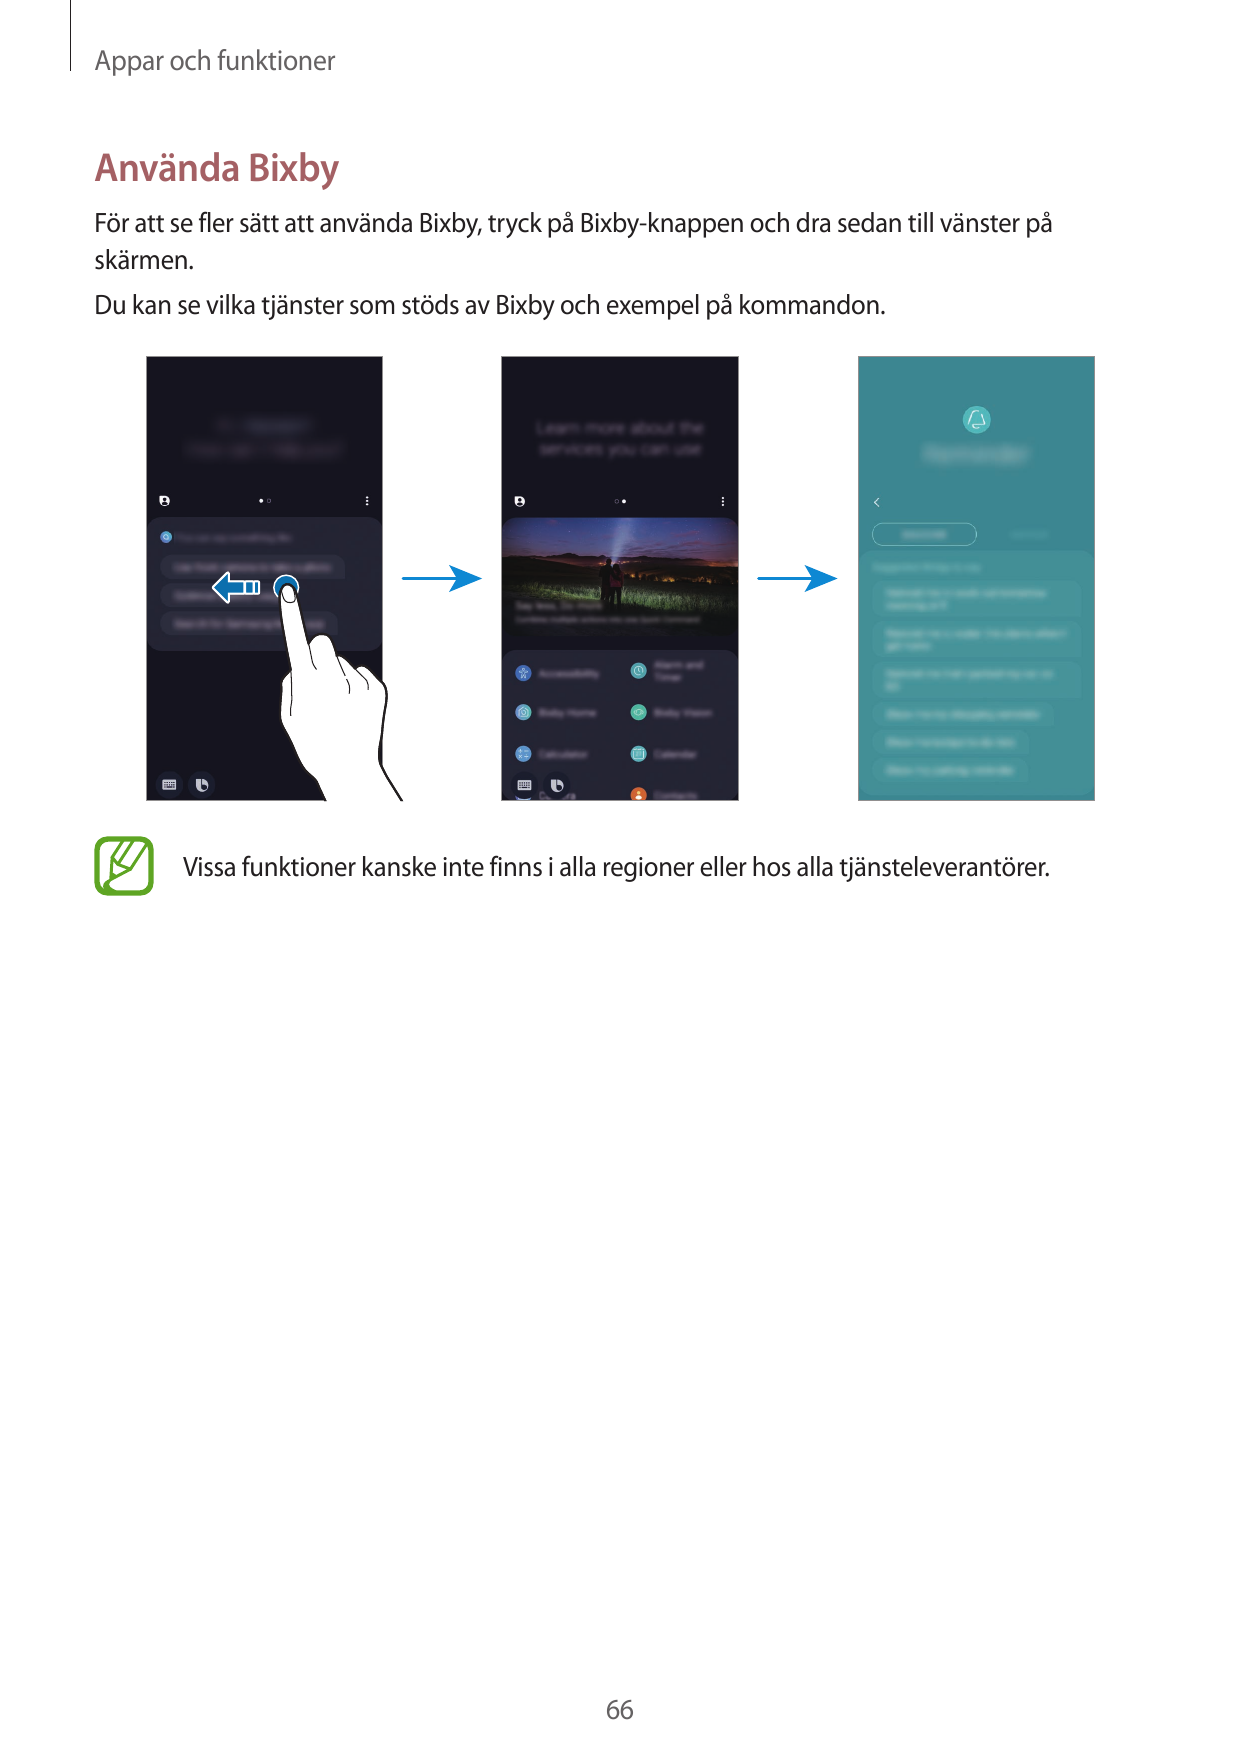 Appar och funktionerAnvända BixbyFör att se fler sätt att använda Bixby, tryck på Bixby-knappen och dra sedan till vänster påskä